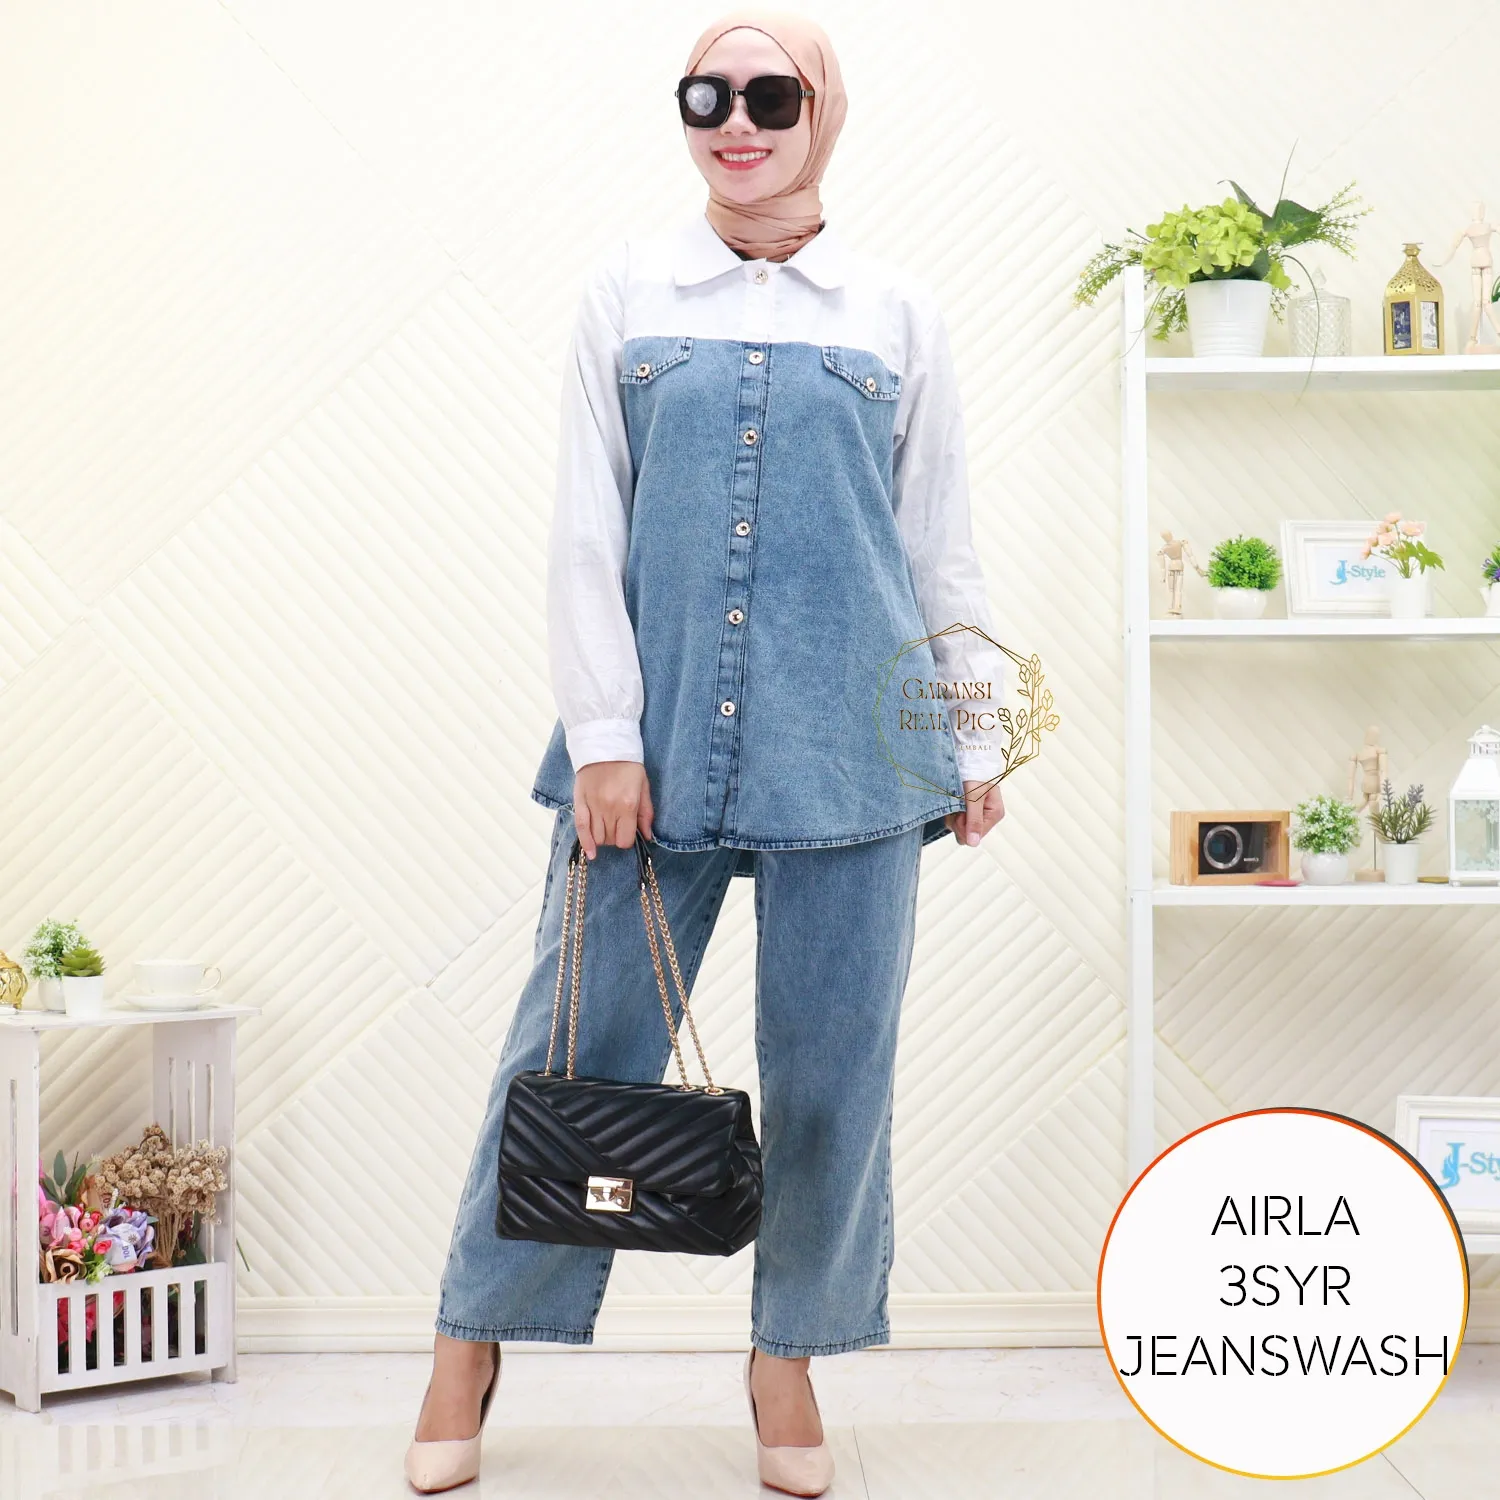 One Set Setelan Wanita Muslimah Jeans Tebal Korean Style Kemeja Full Kancing Variasi Saku Airla 3SYR Jean wash - bajubaru.id, Belanja Online di bajubaru.id saja 